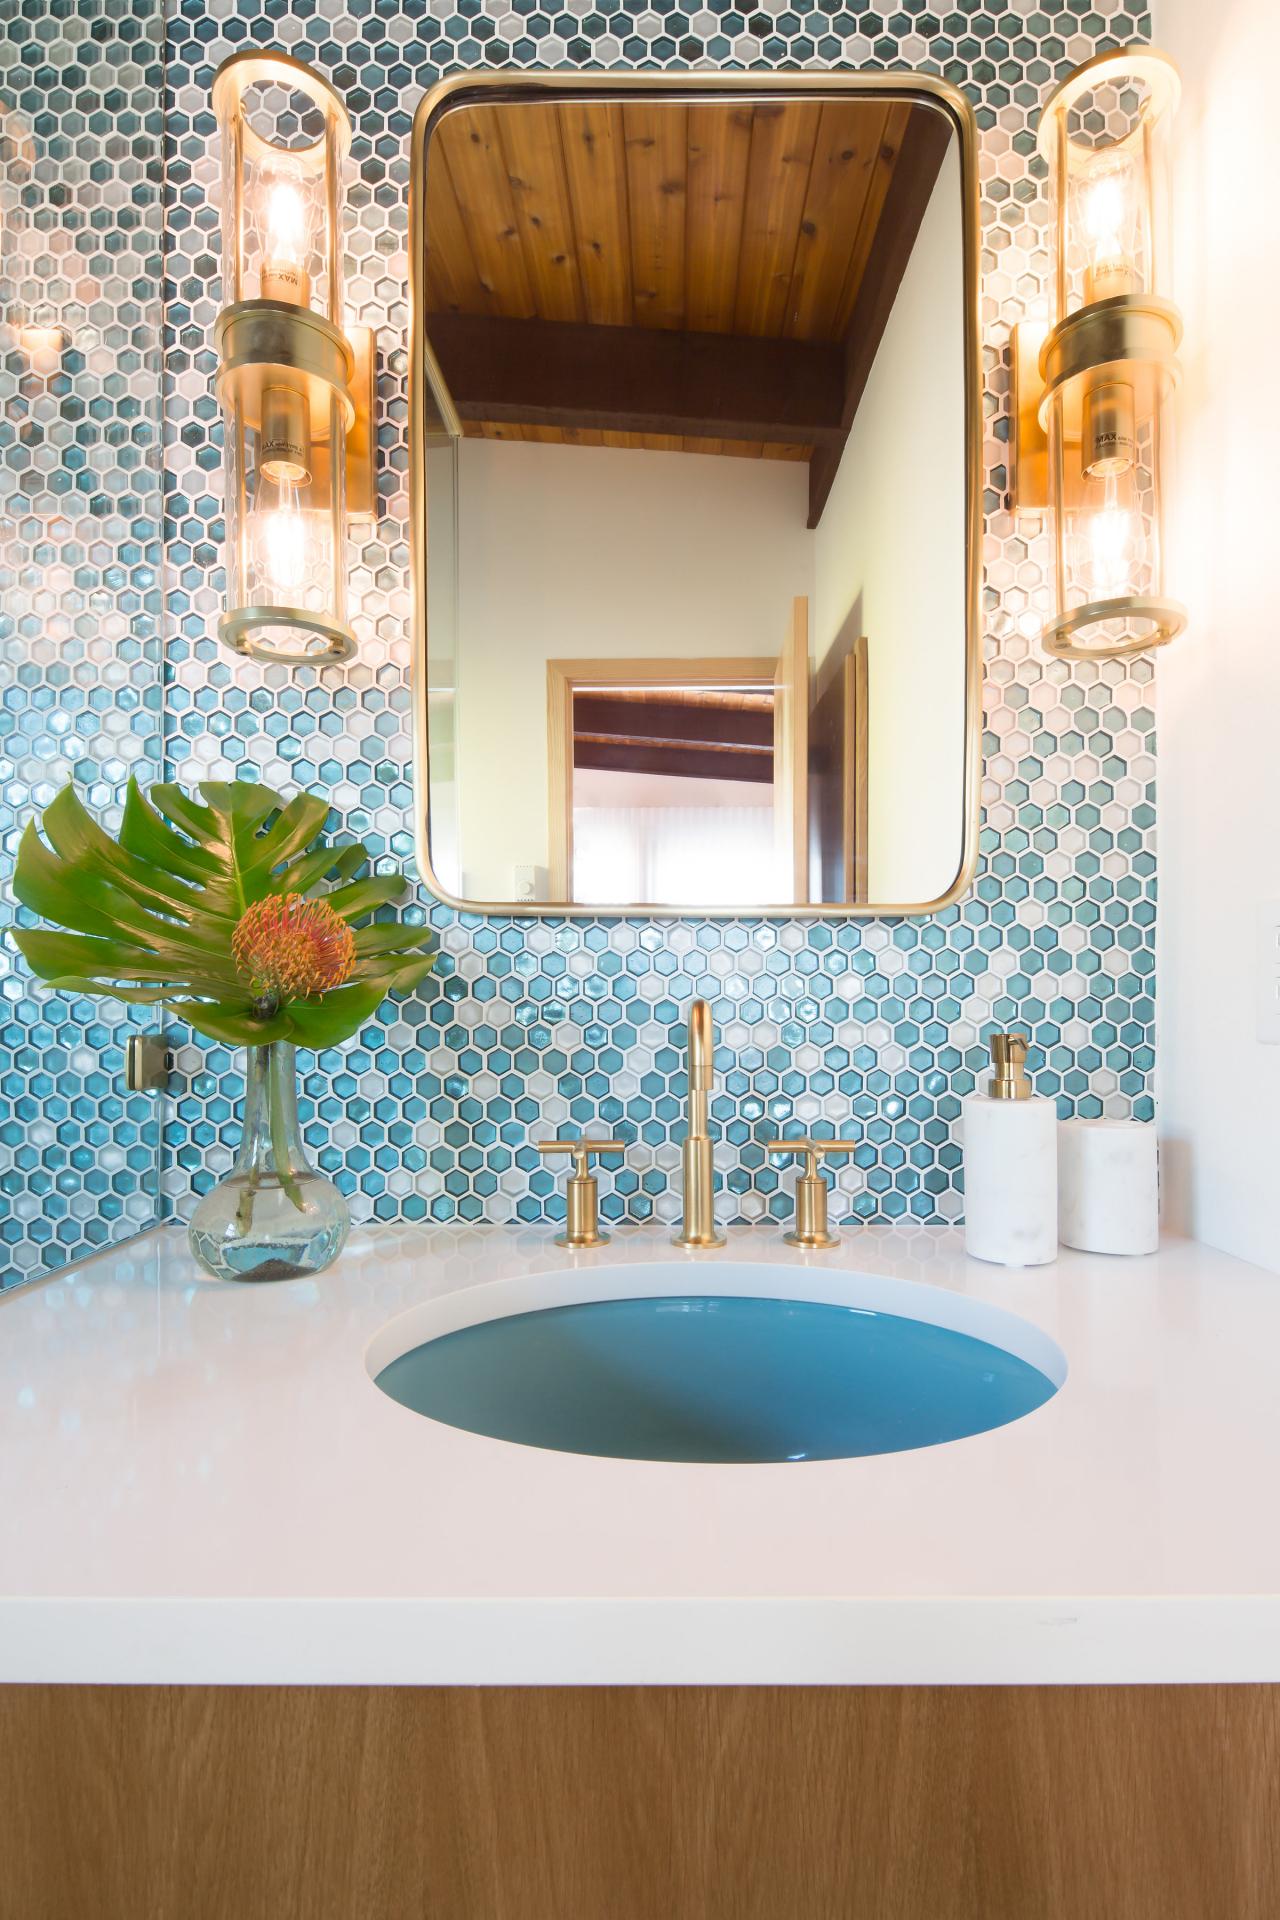 Decorative Bathroom Vanities, Blue Powder Room Sink Vanity